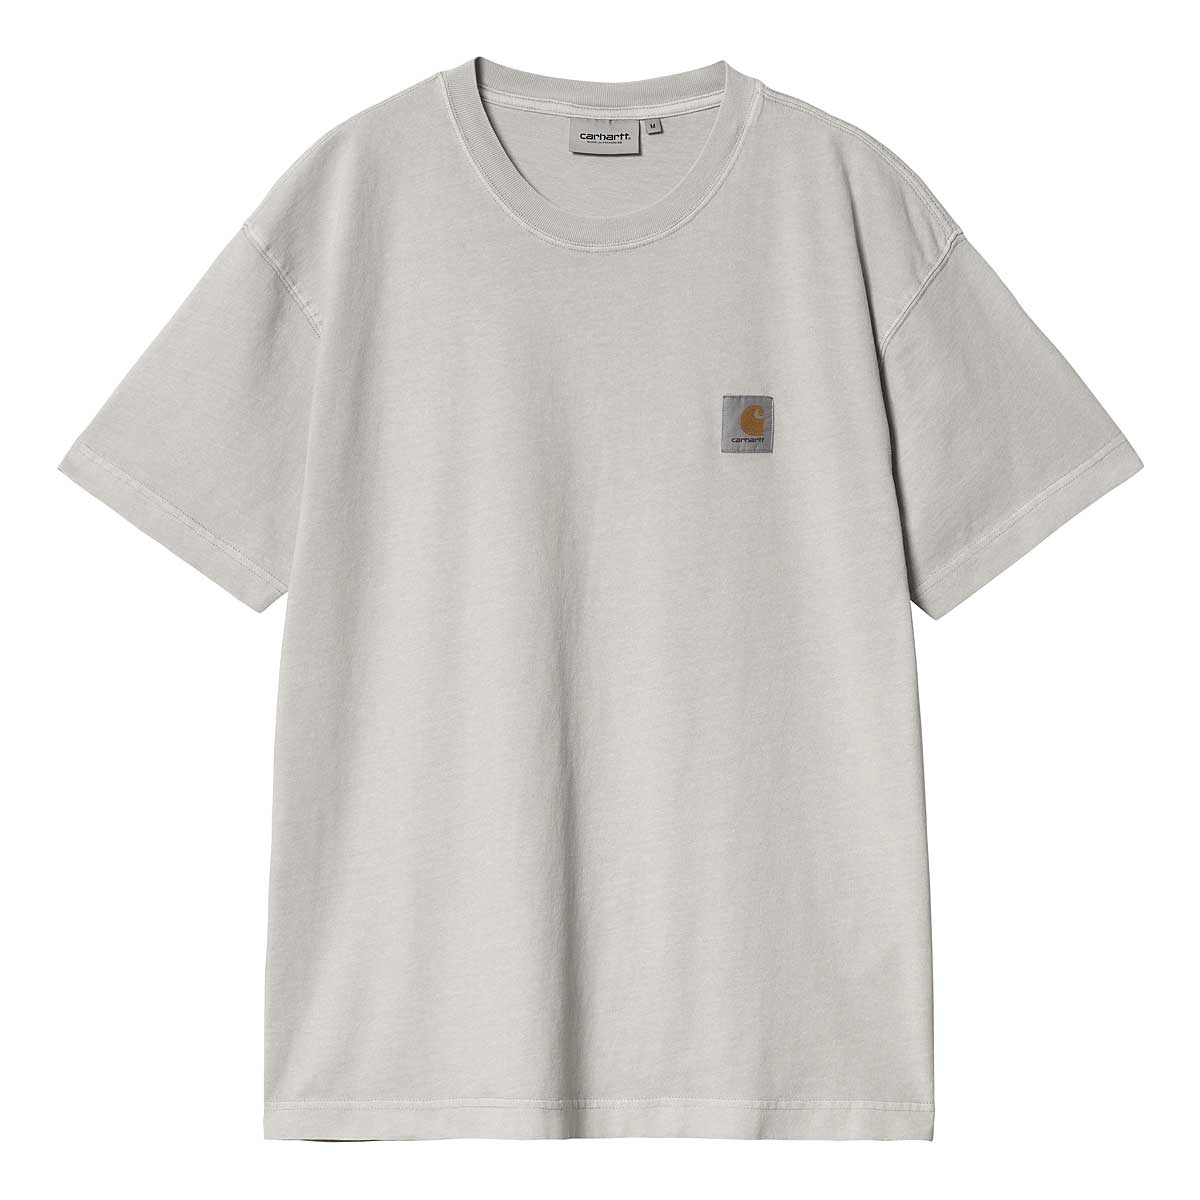 Carhartt Wip S/s Nelson T-shirt, Silber 2XL